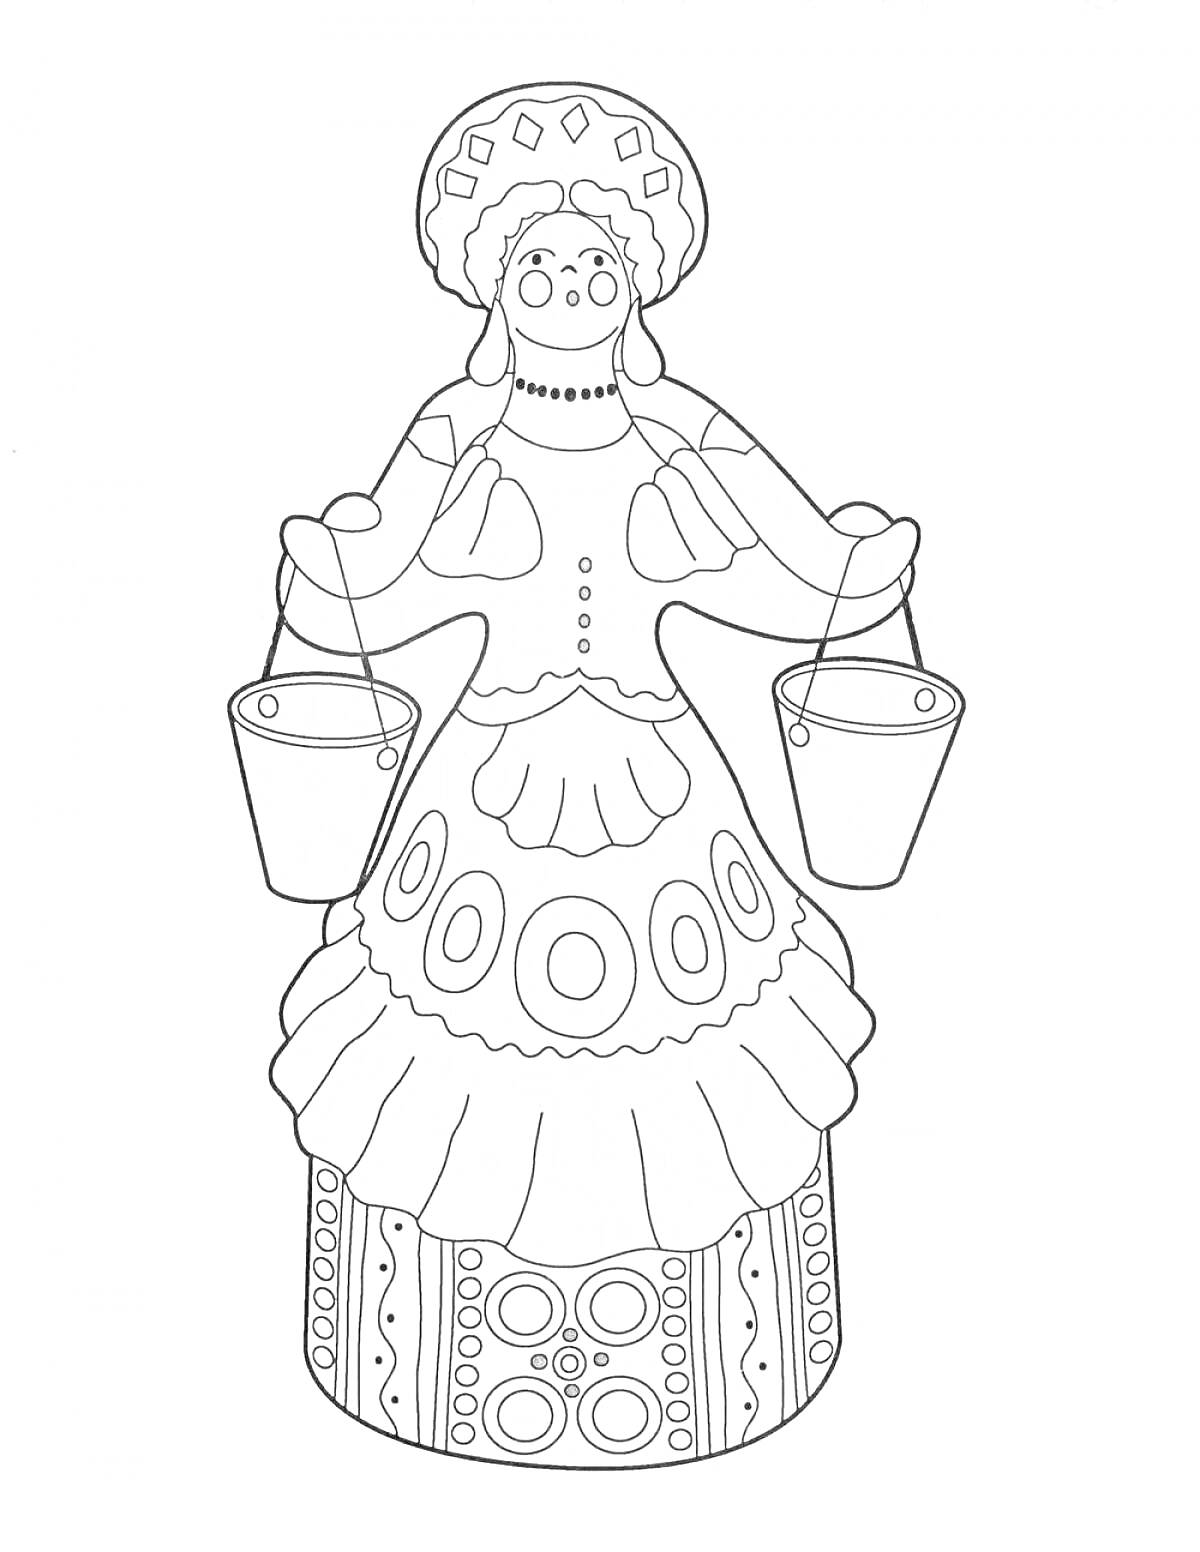 Раскраска Дымковская игрушка барыня с двумя ведрами, в народном костюме с орнаментом на юбке и кокошником